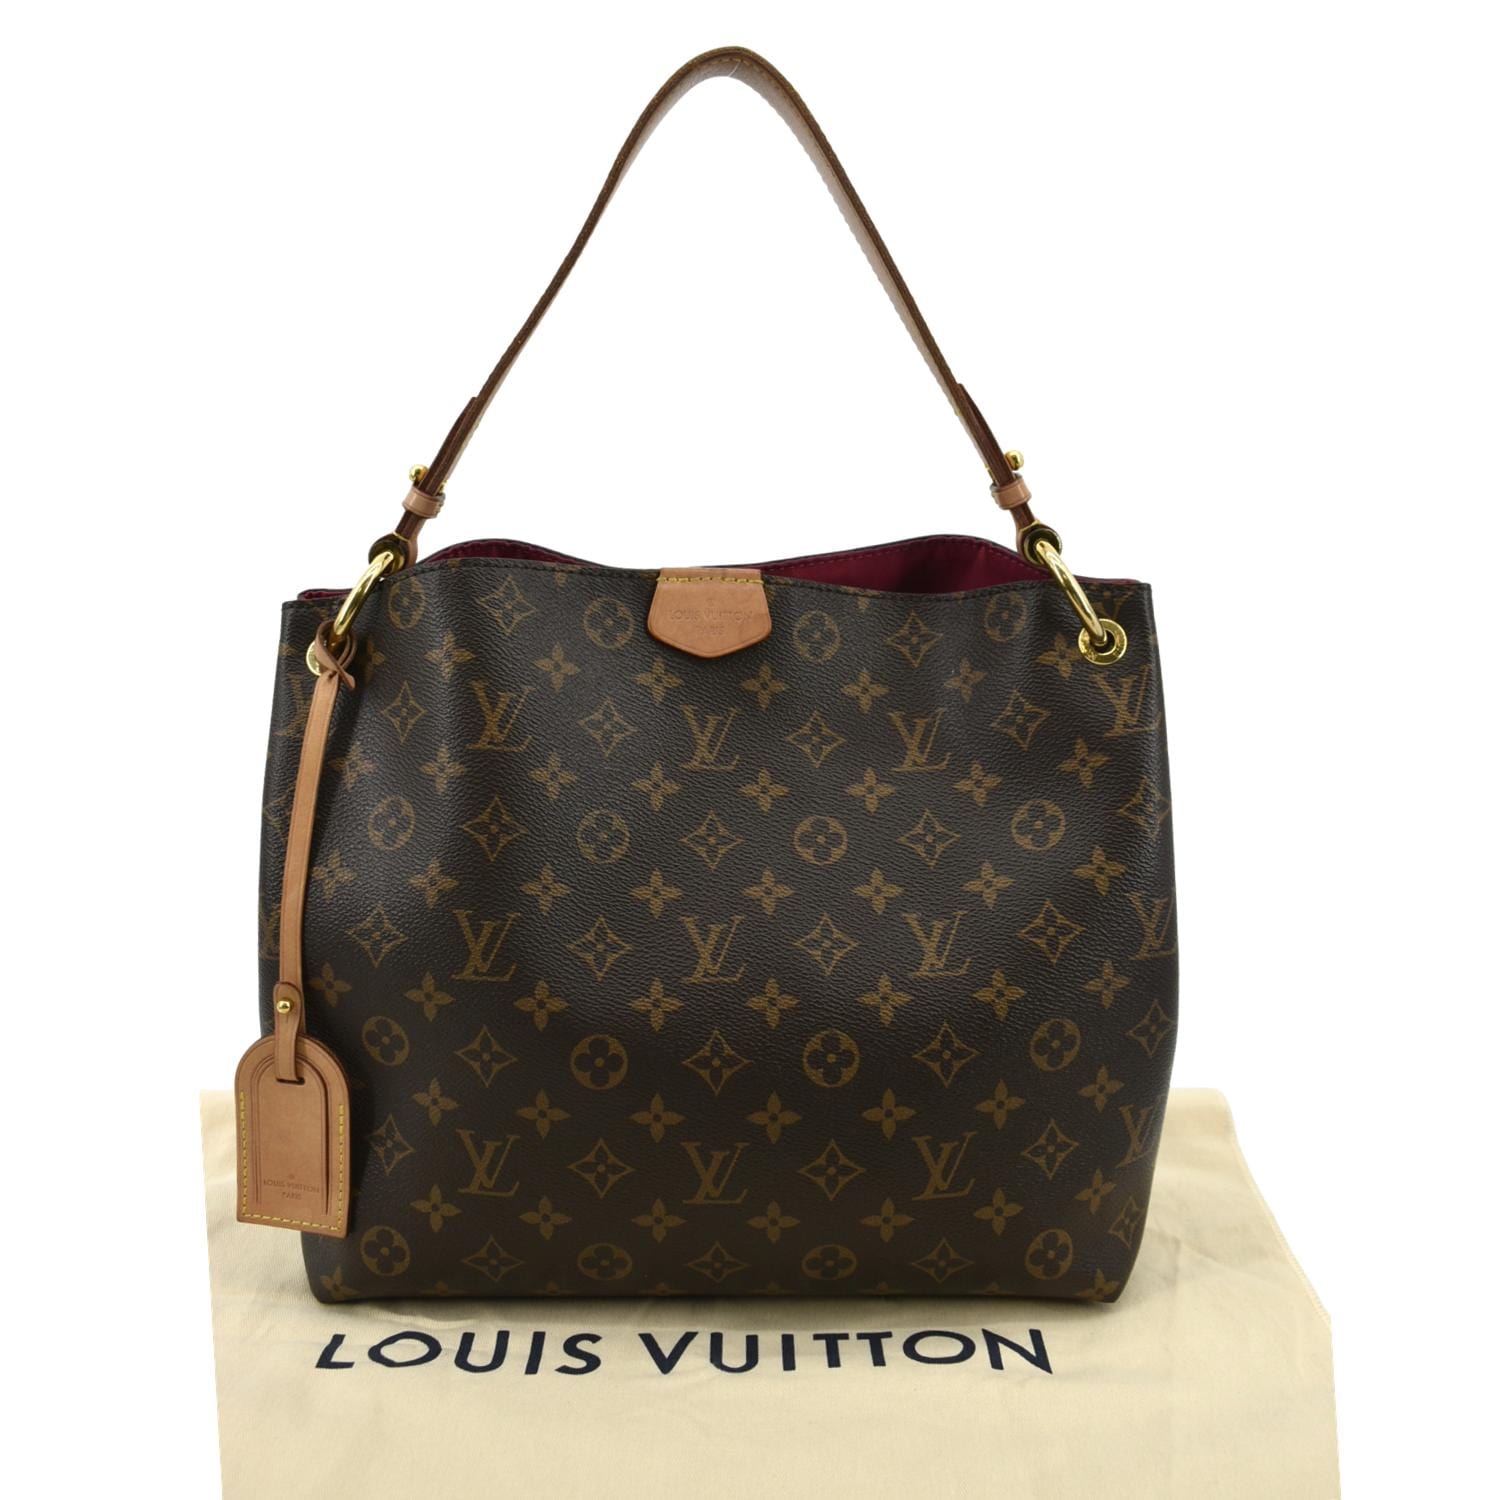 Louis Vuitton, Bags, Louis Vuitton Graceful Pm